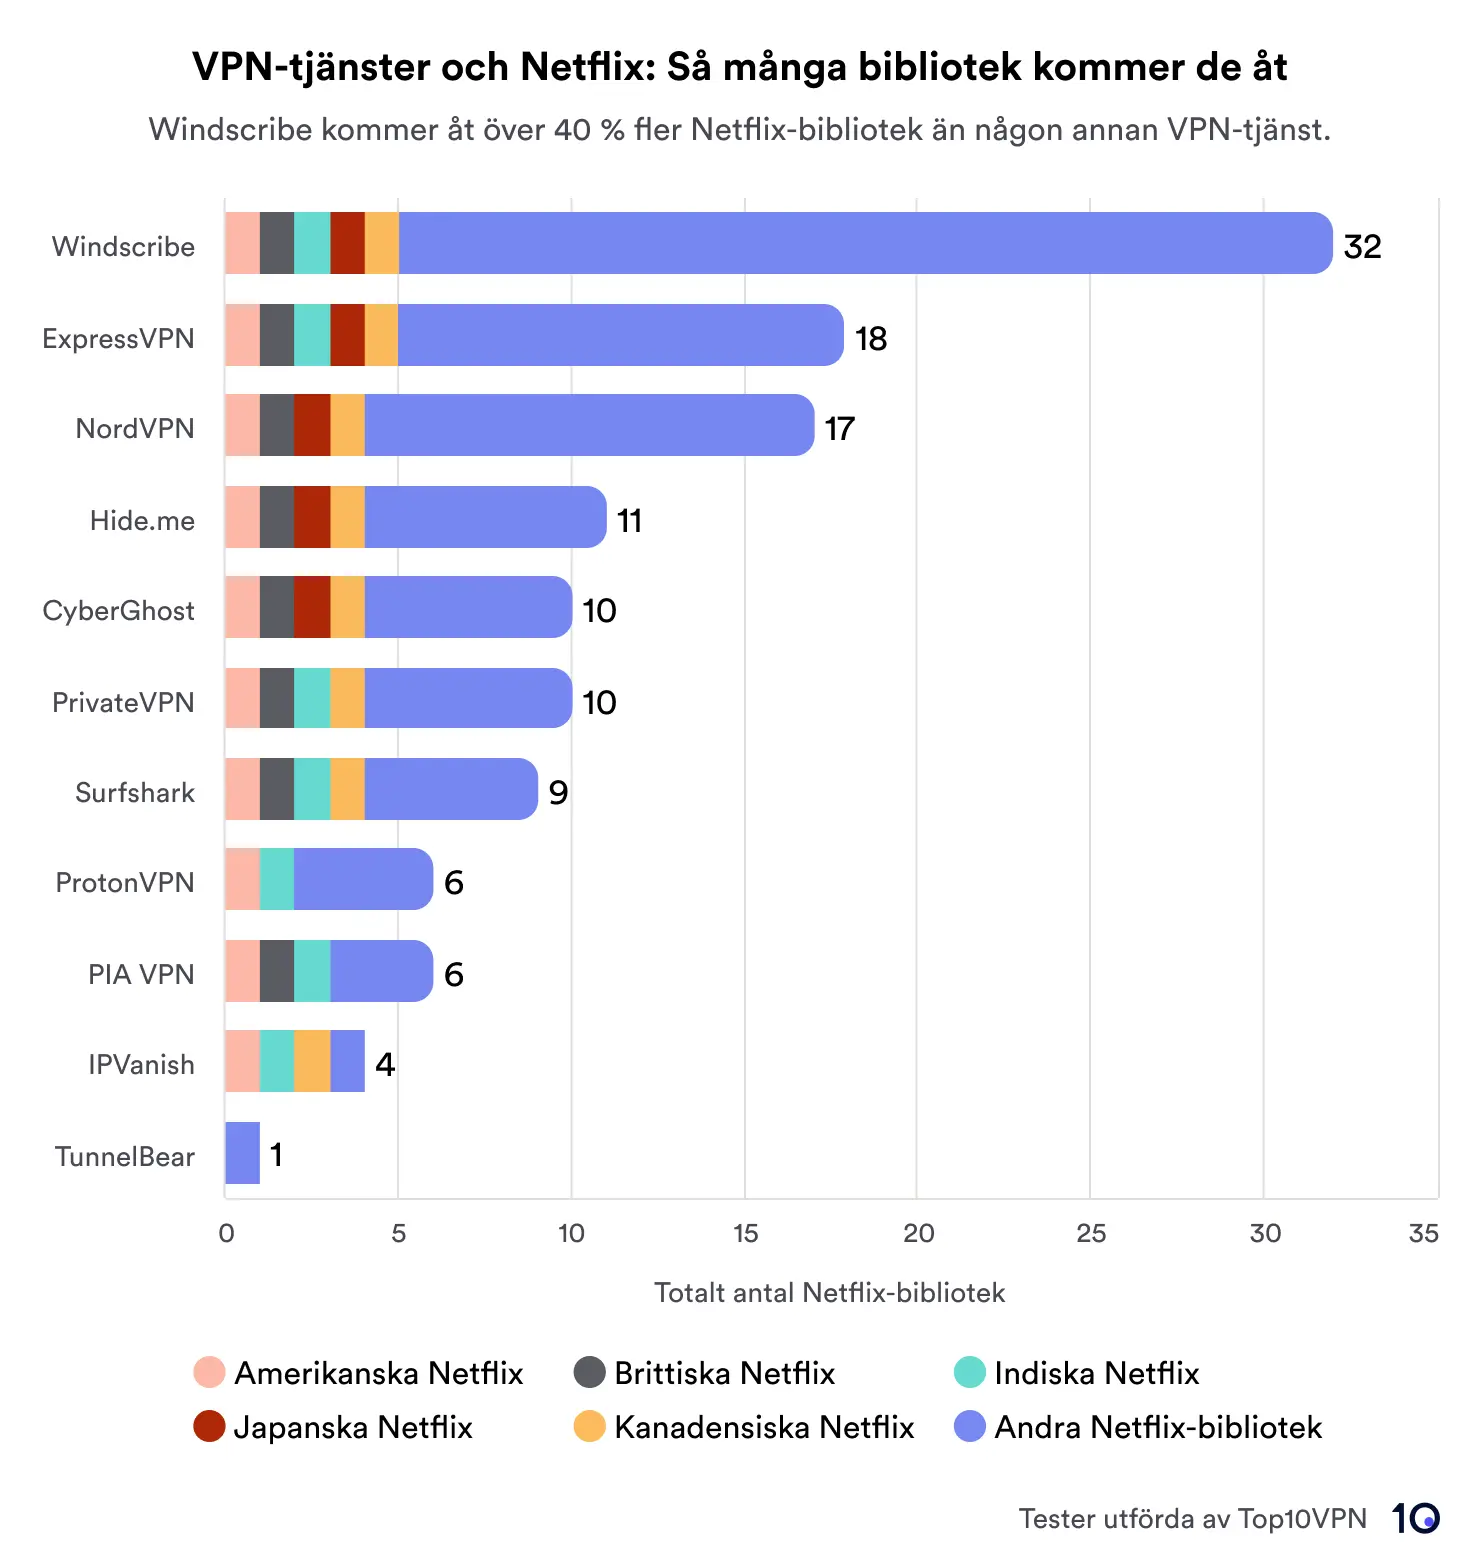 Stapeldiagram som jämför VPN-tjänster baserat på det totala antalet Netflix-bibliotek som nås. Windscribe leder med 32 bibliotek, följt av ExpressVPN och NordVPN med 18 respektive 17. Diagrammet innehåller en nyckel som indikerar regioner som USA, Storbritannien, Japan, Kanada, Indien och andra .